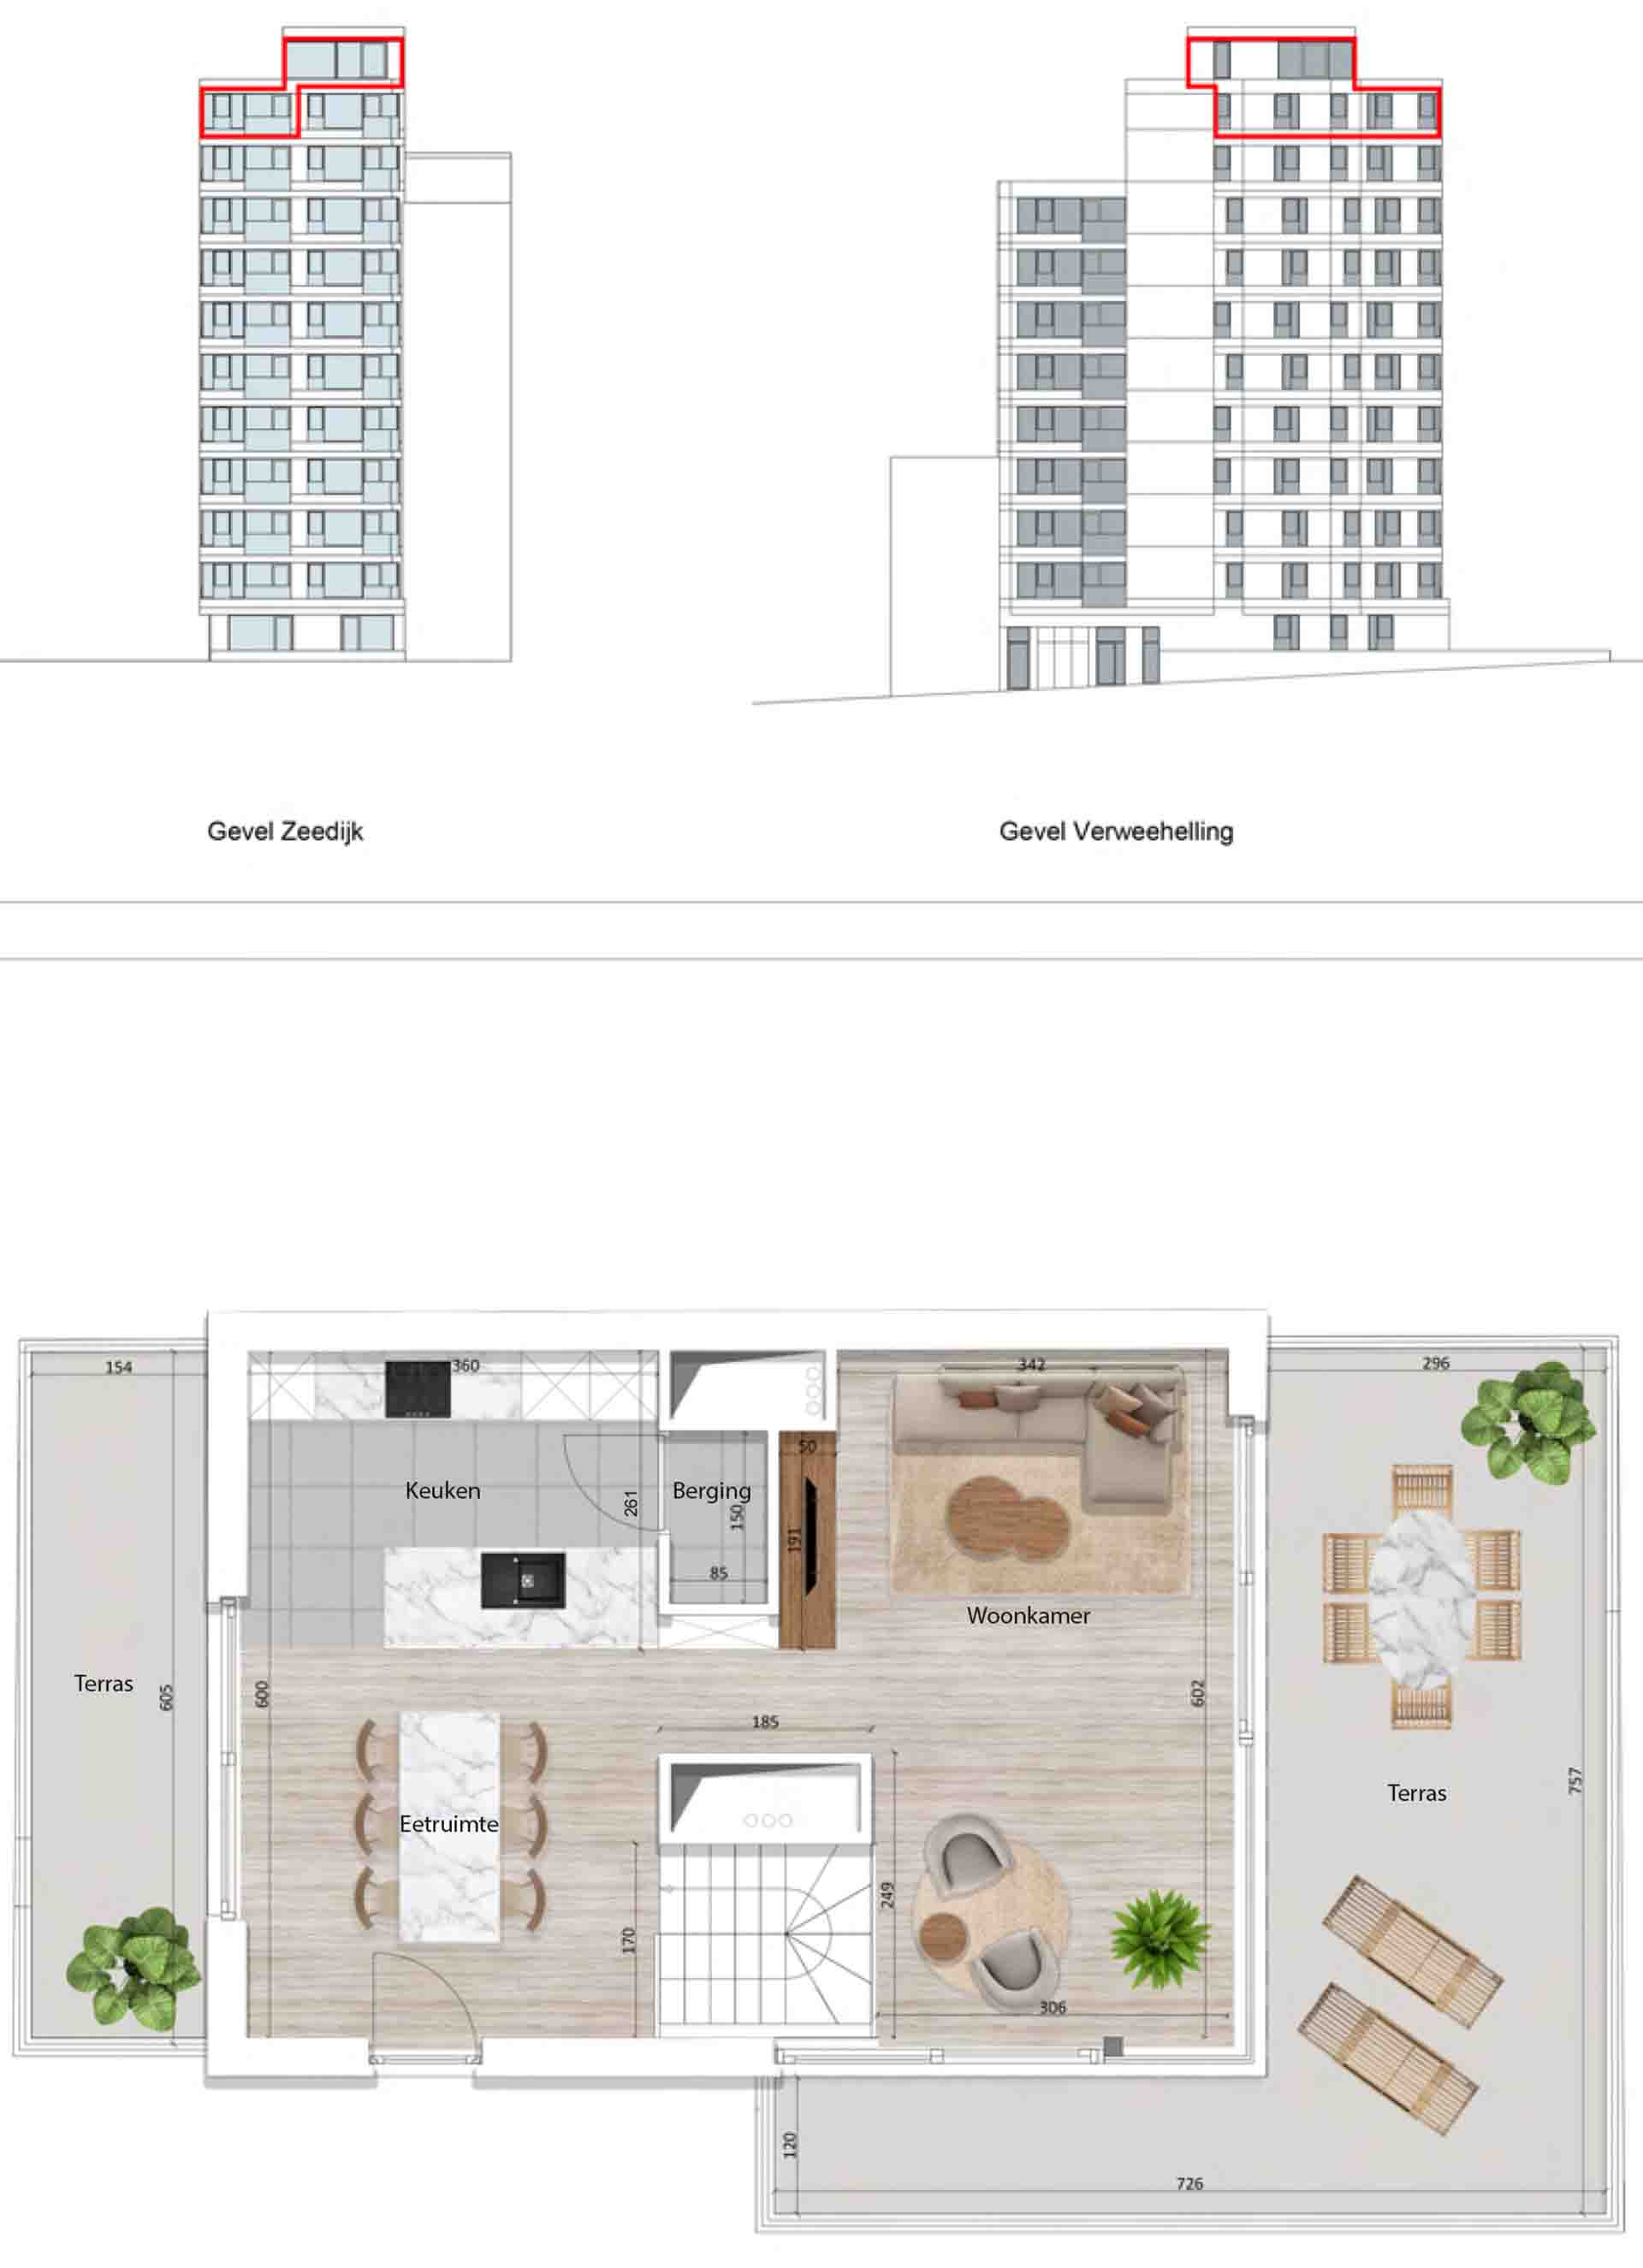 Residentie <br/> Pier - image appartement-te-koop-blankenberge-residentie-pier-plan-1001-variant-2-boven on https://hoprom.be